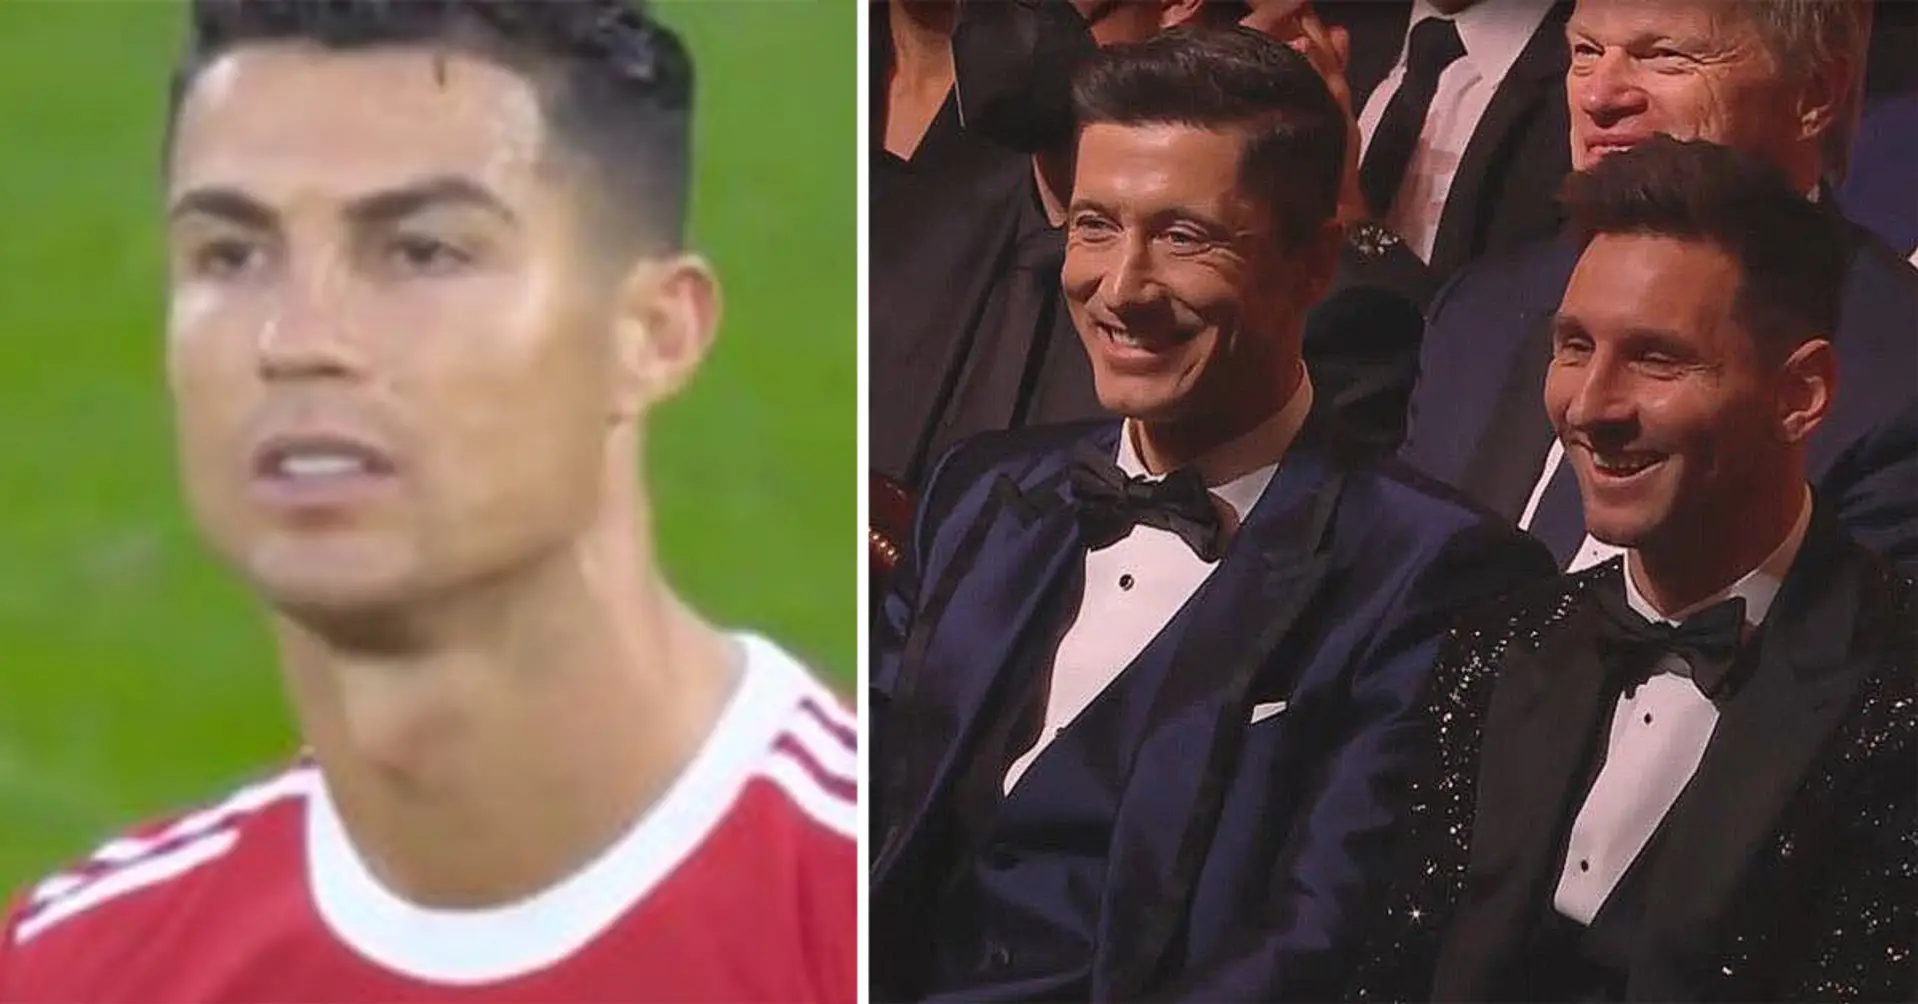 France Football trollte Cristiano während der Zeremonie - Messis und Mbappes Reaktion vor der Kamera gefangen